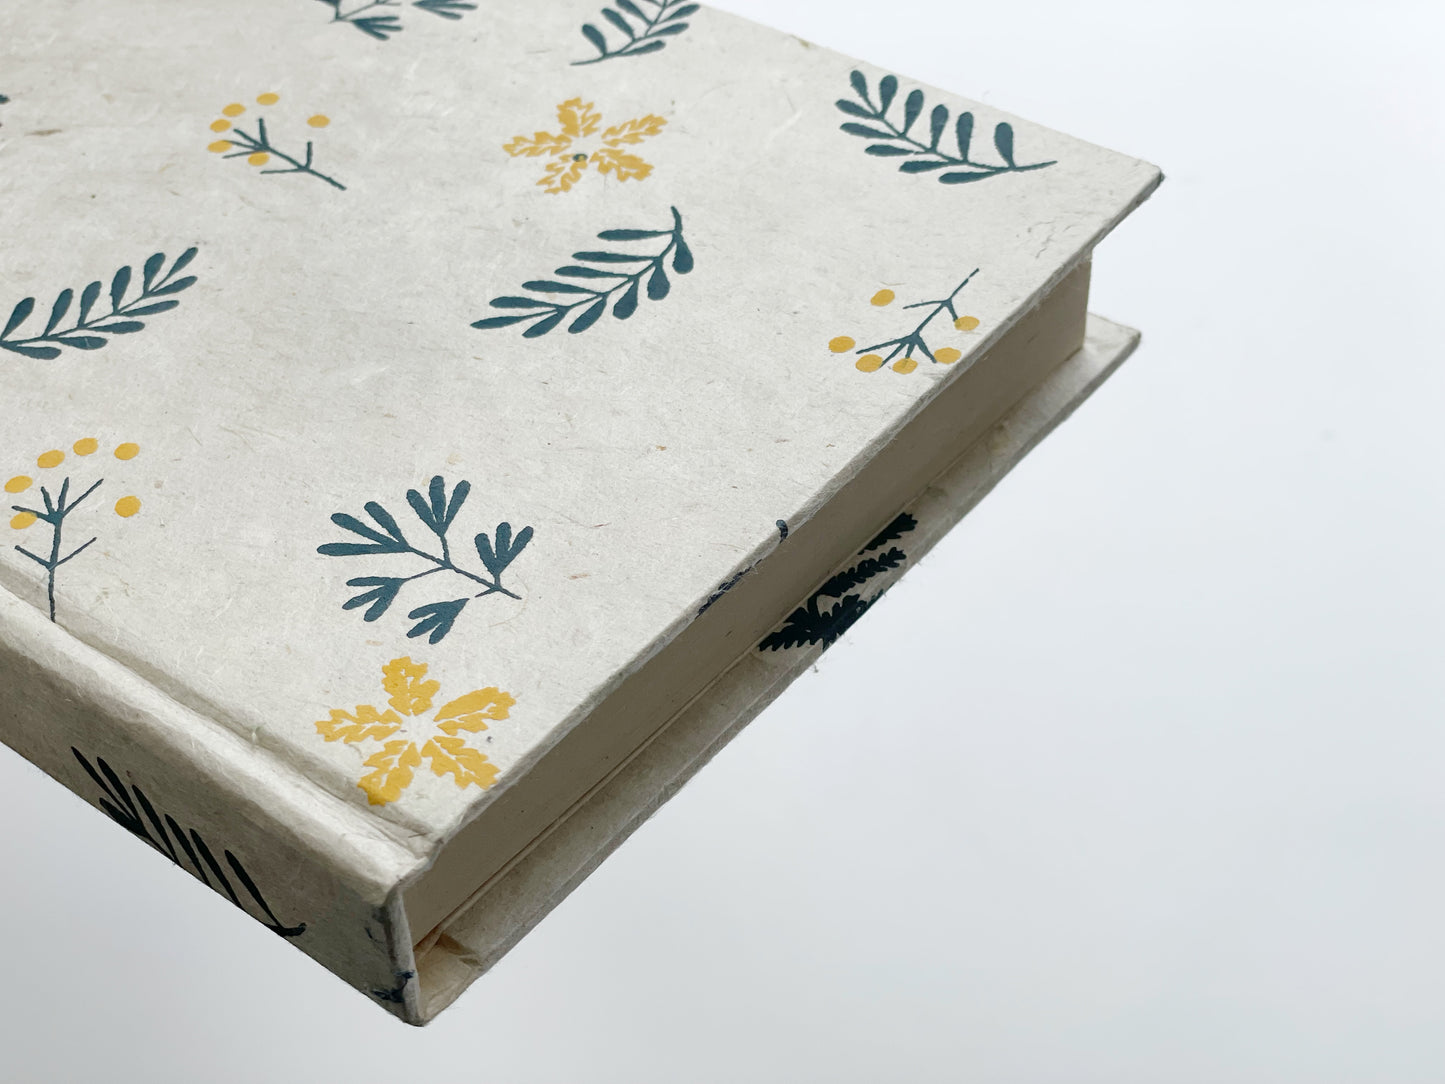 Handmade Paper Journal | Indigo Blue on Beige